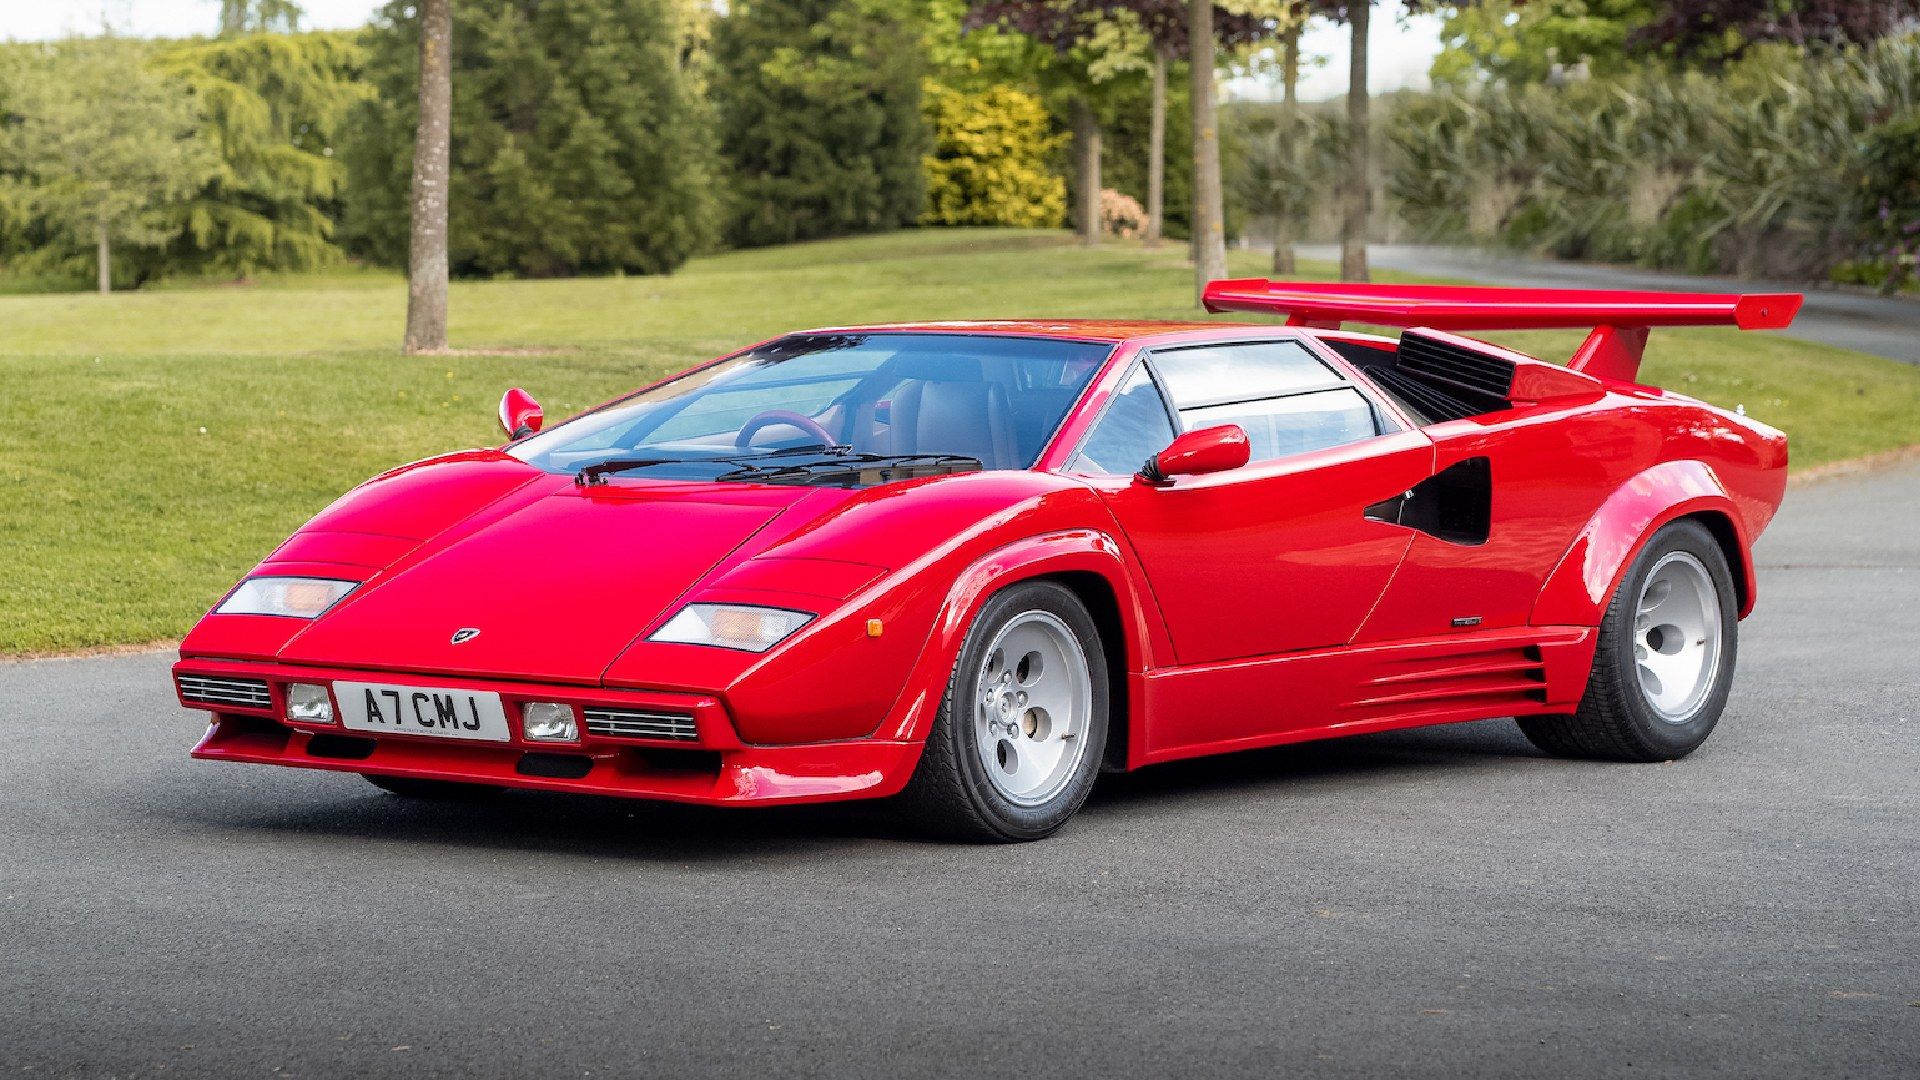 Parabrisas | Conocé el Lamborghini Diablo en su 30 aniversario